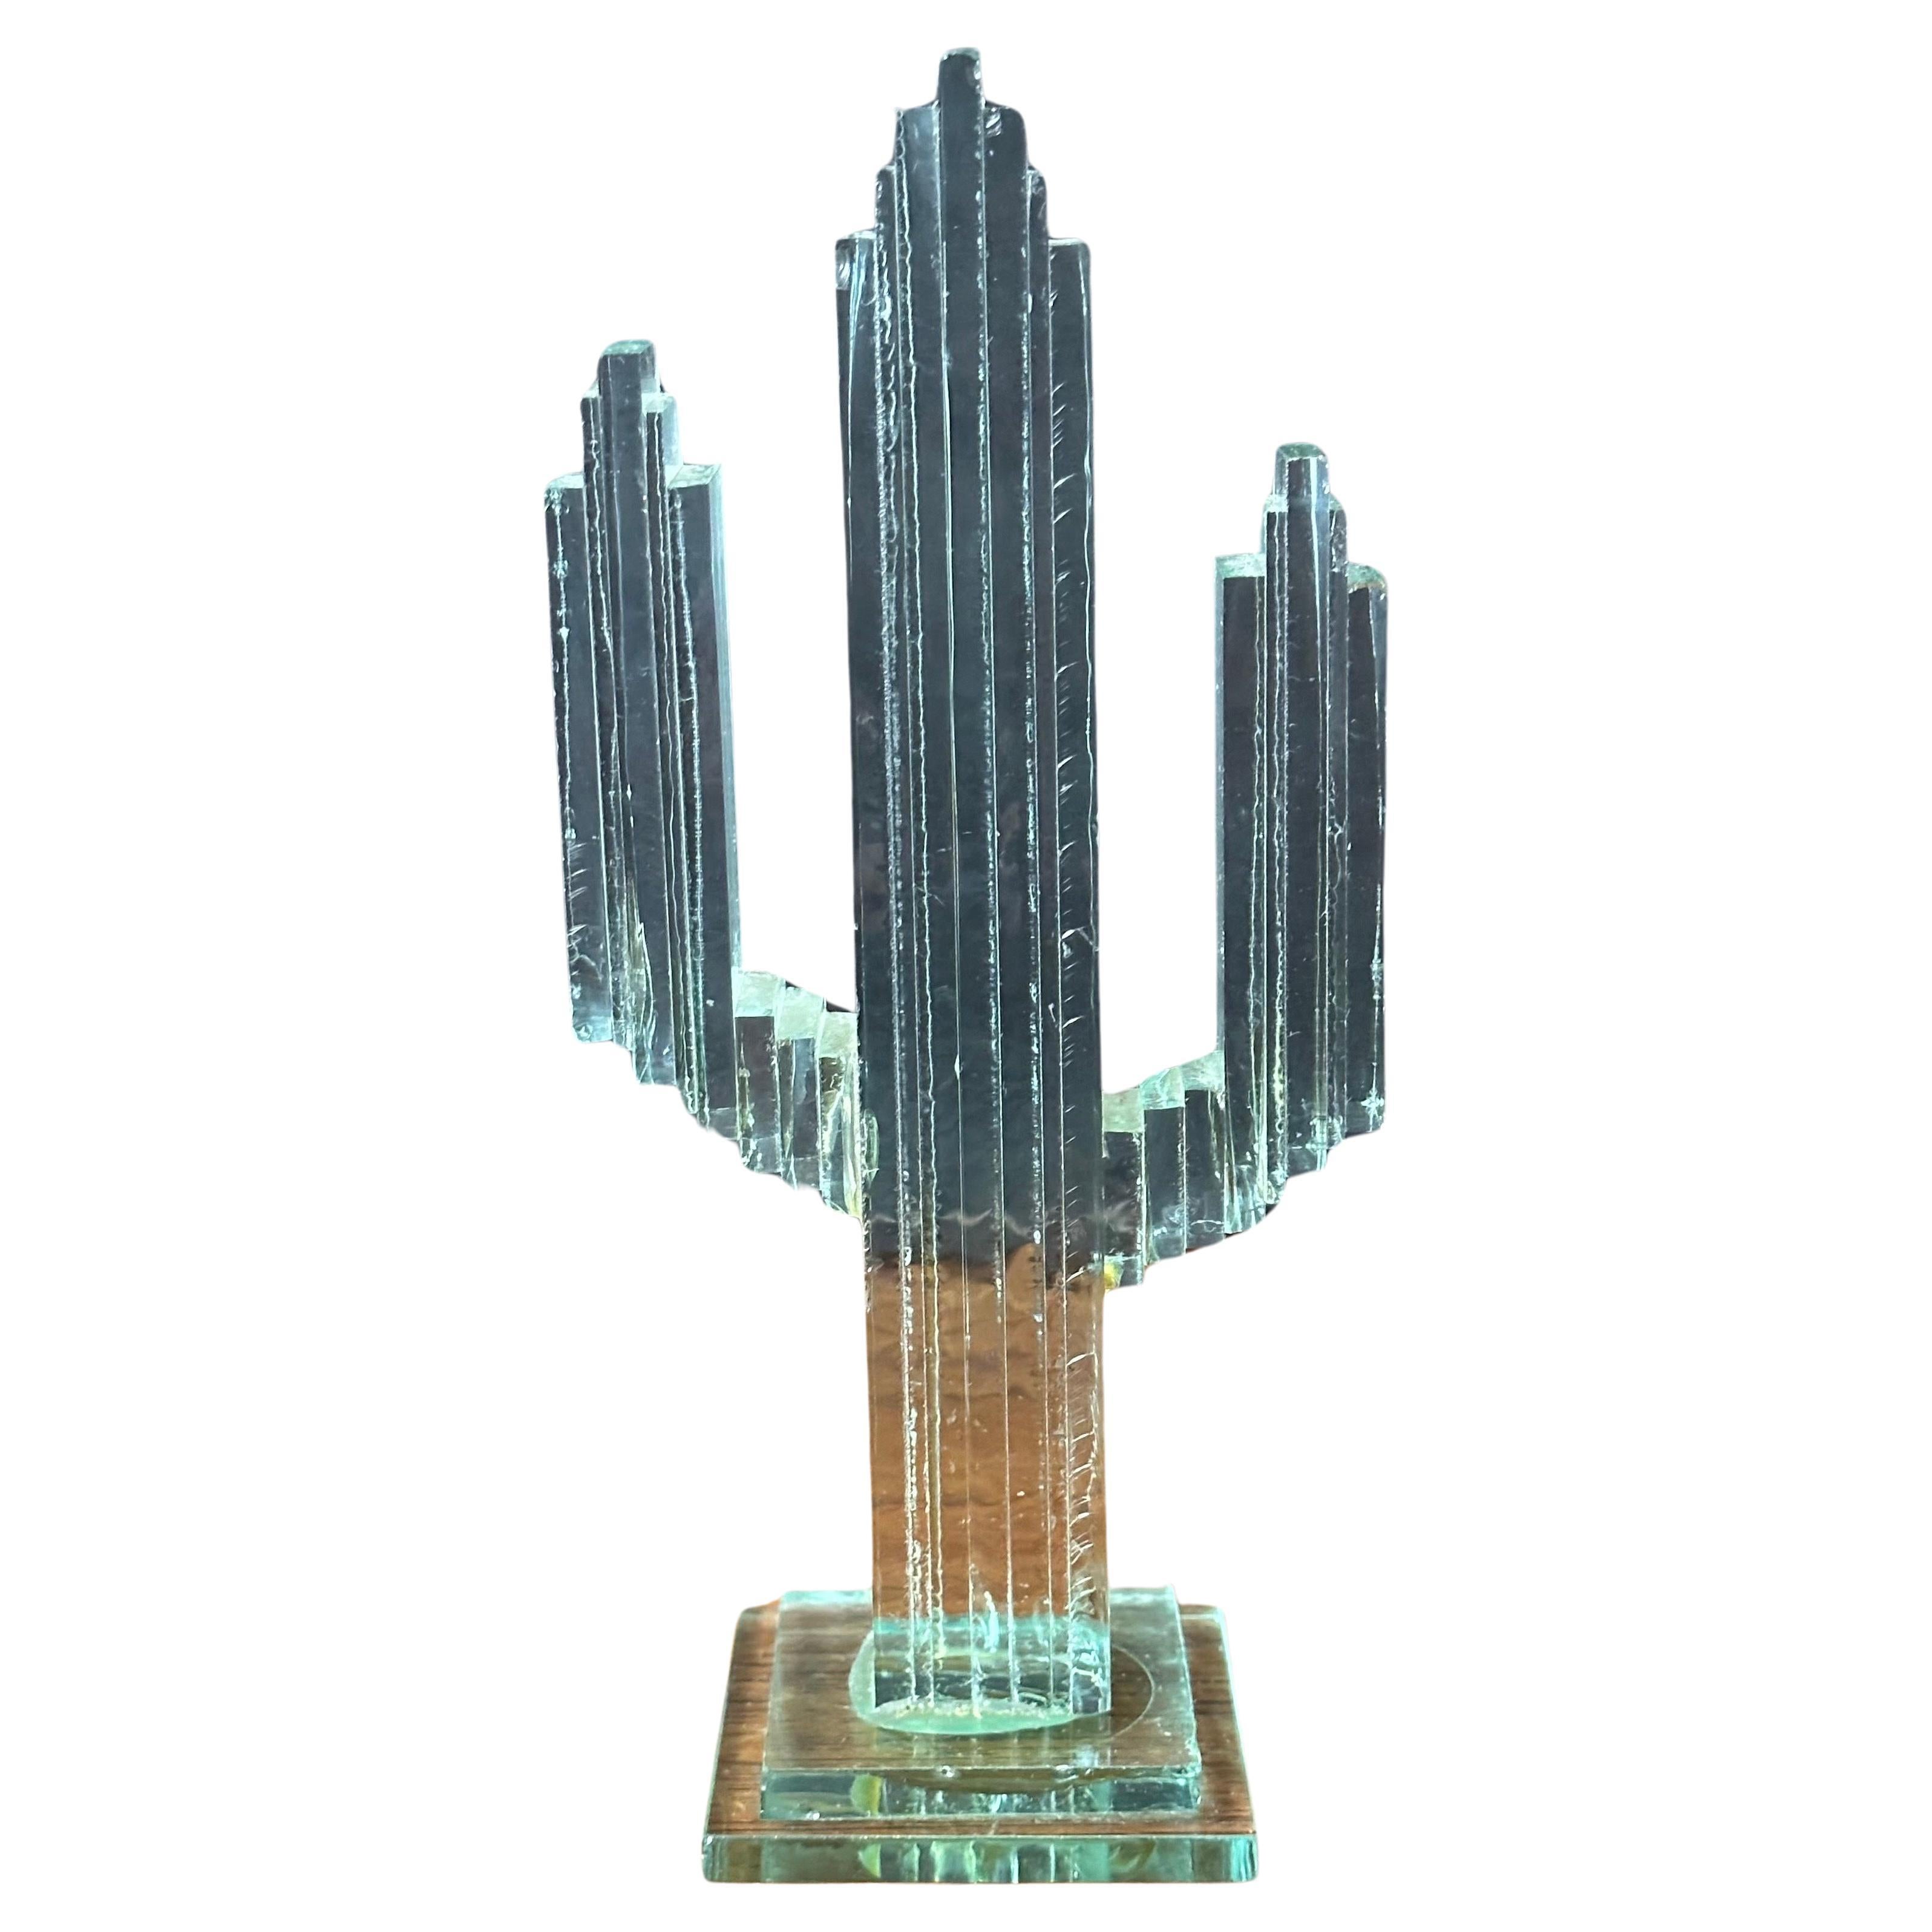 Eine sehr coole gestapelte Glasplatte Saguaro Kaktus Skulptur, circa 1980er Jahre.   Das Stück ist handgefertigt durch Kleben gestapelt Platten aus Glas, es ist in sehr gutem Zustand mit bo Chips oder Risse und misst 3,75 